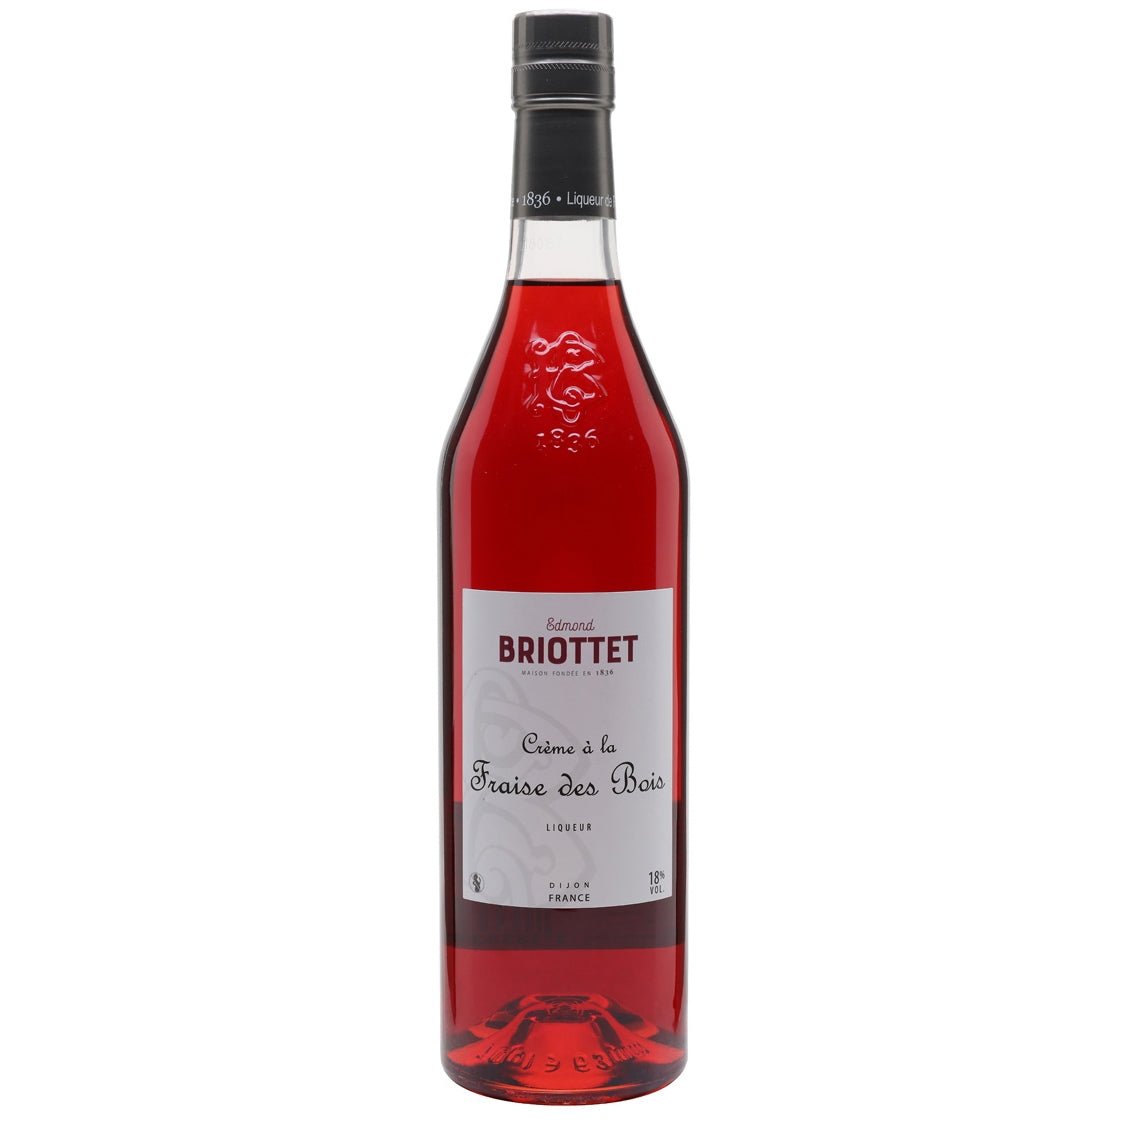 Briottet Creme a la Fraise des Bois - Latitude Wine & Liquor Merchant